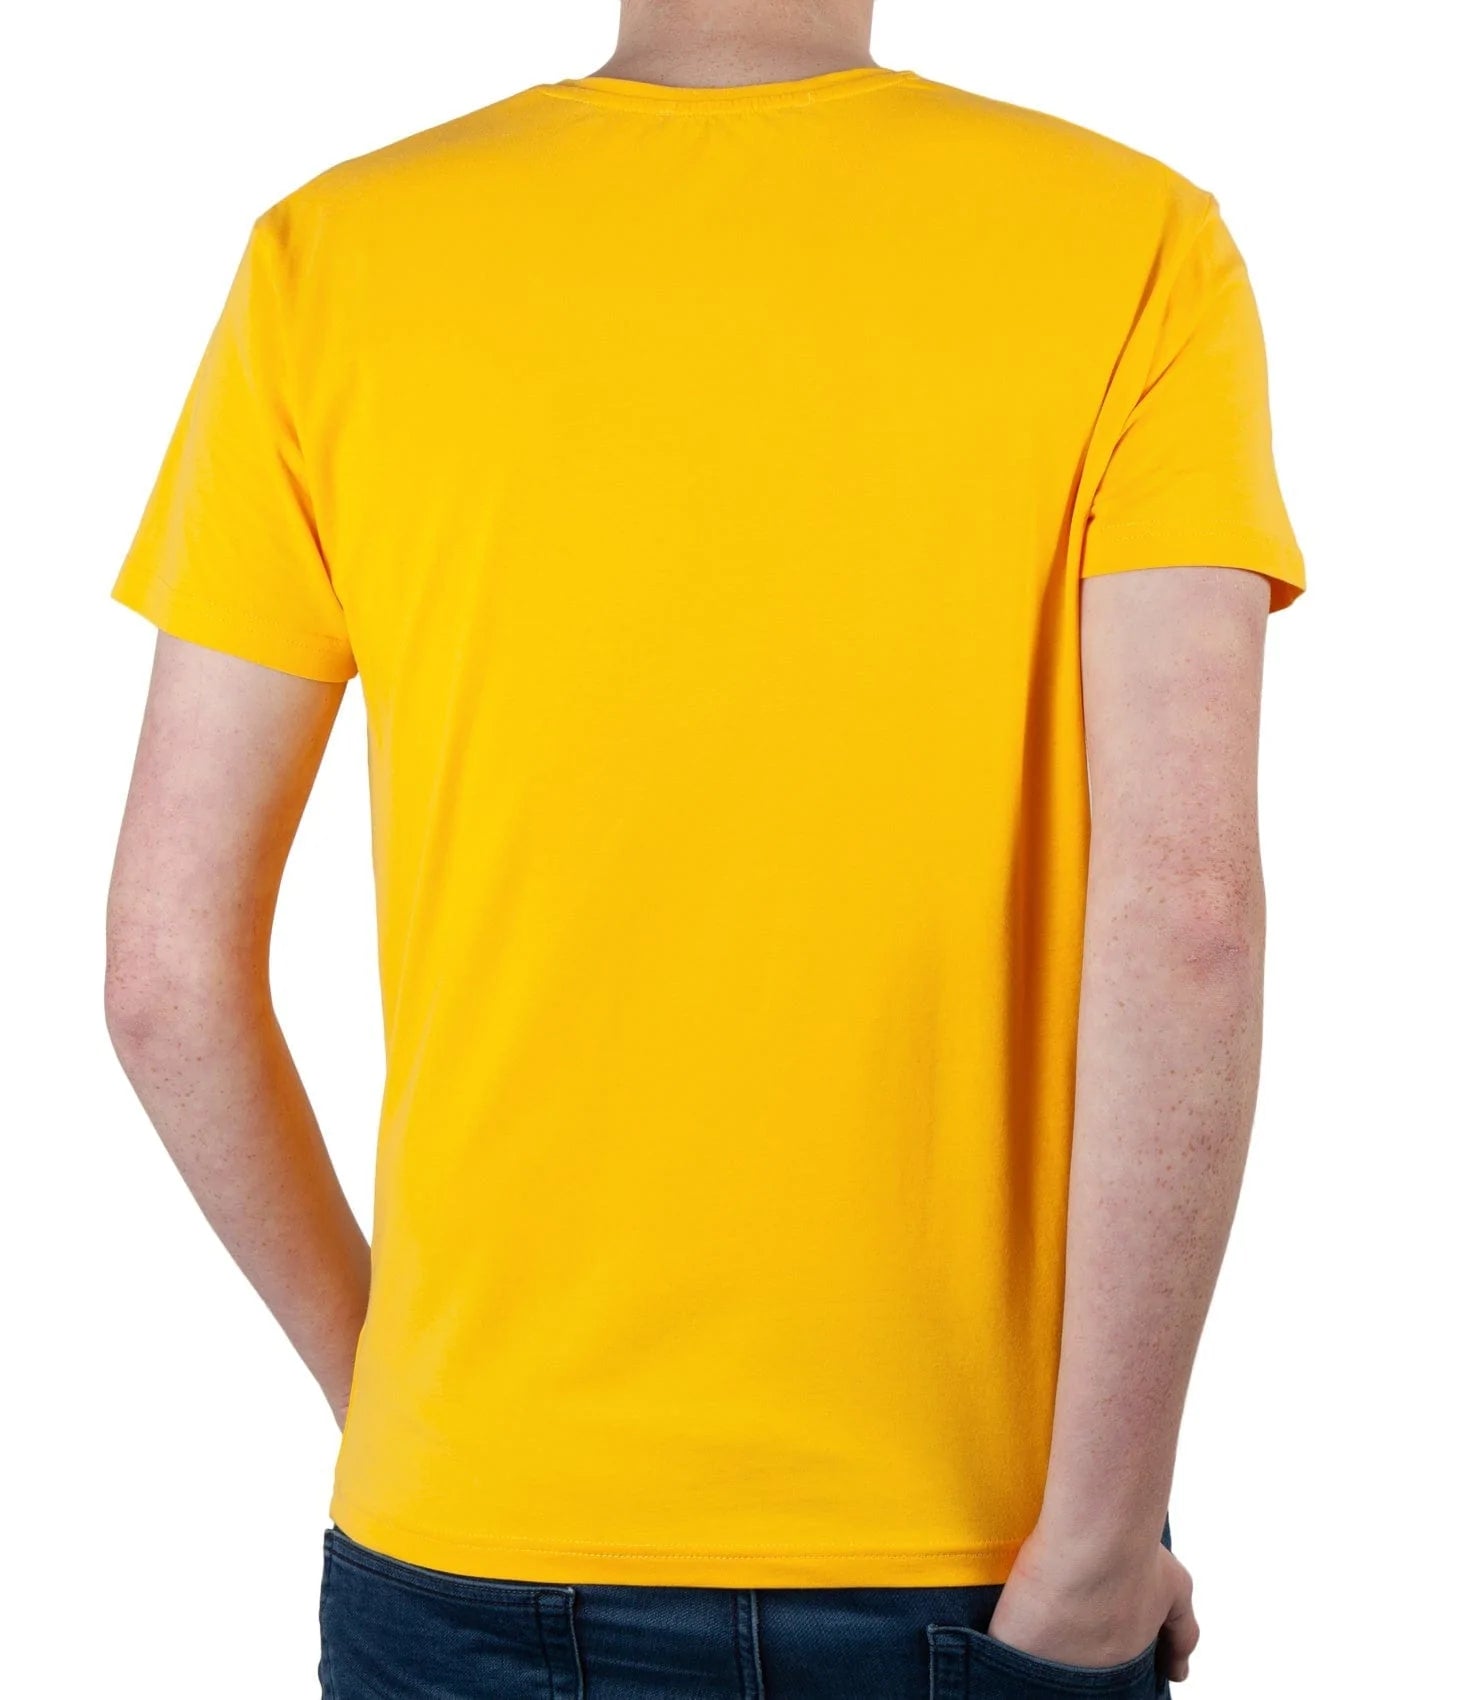 Top GunT-Shirt "Defend" yellow